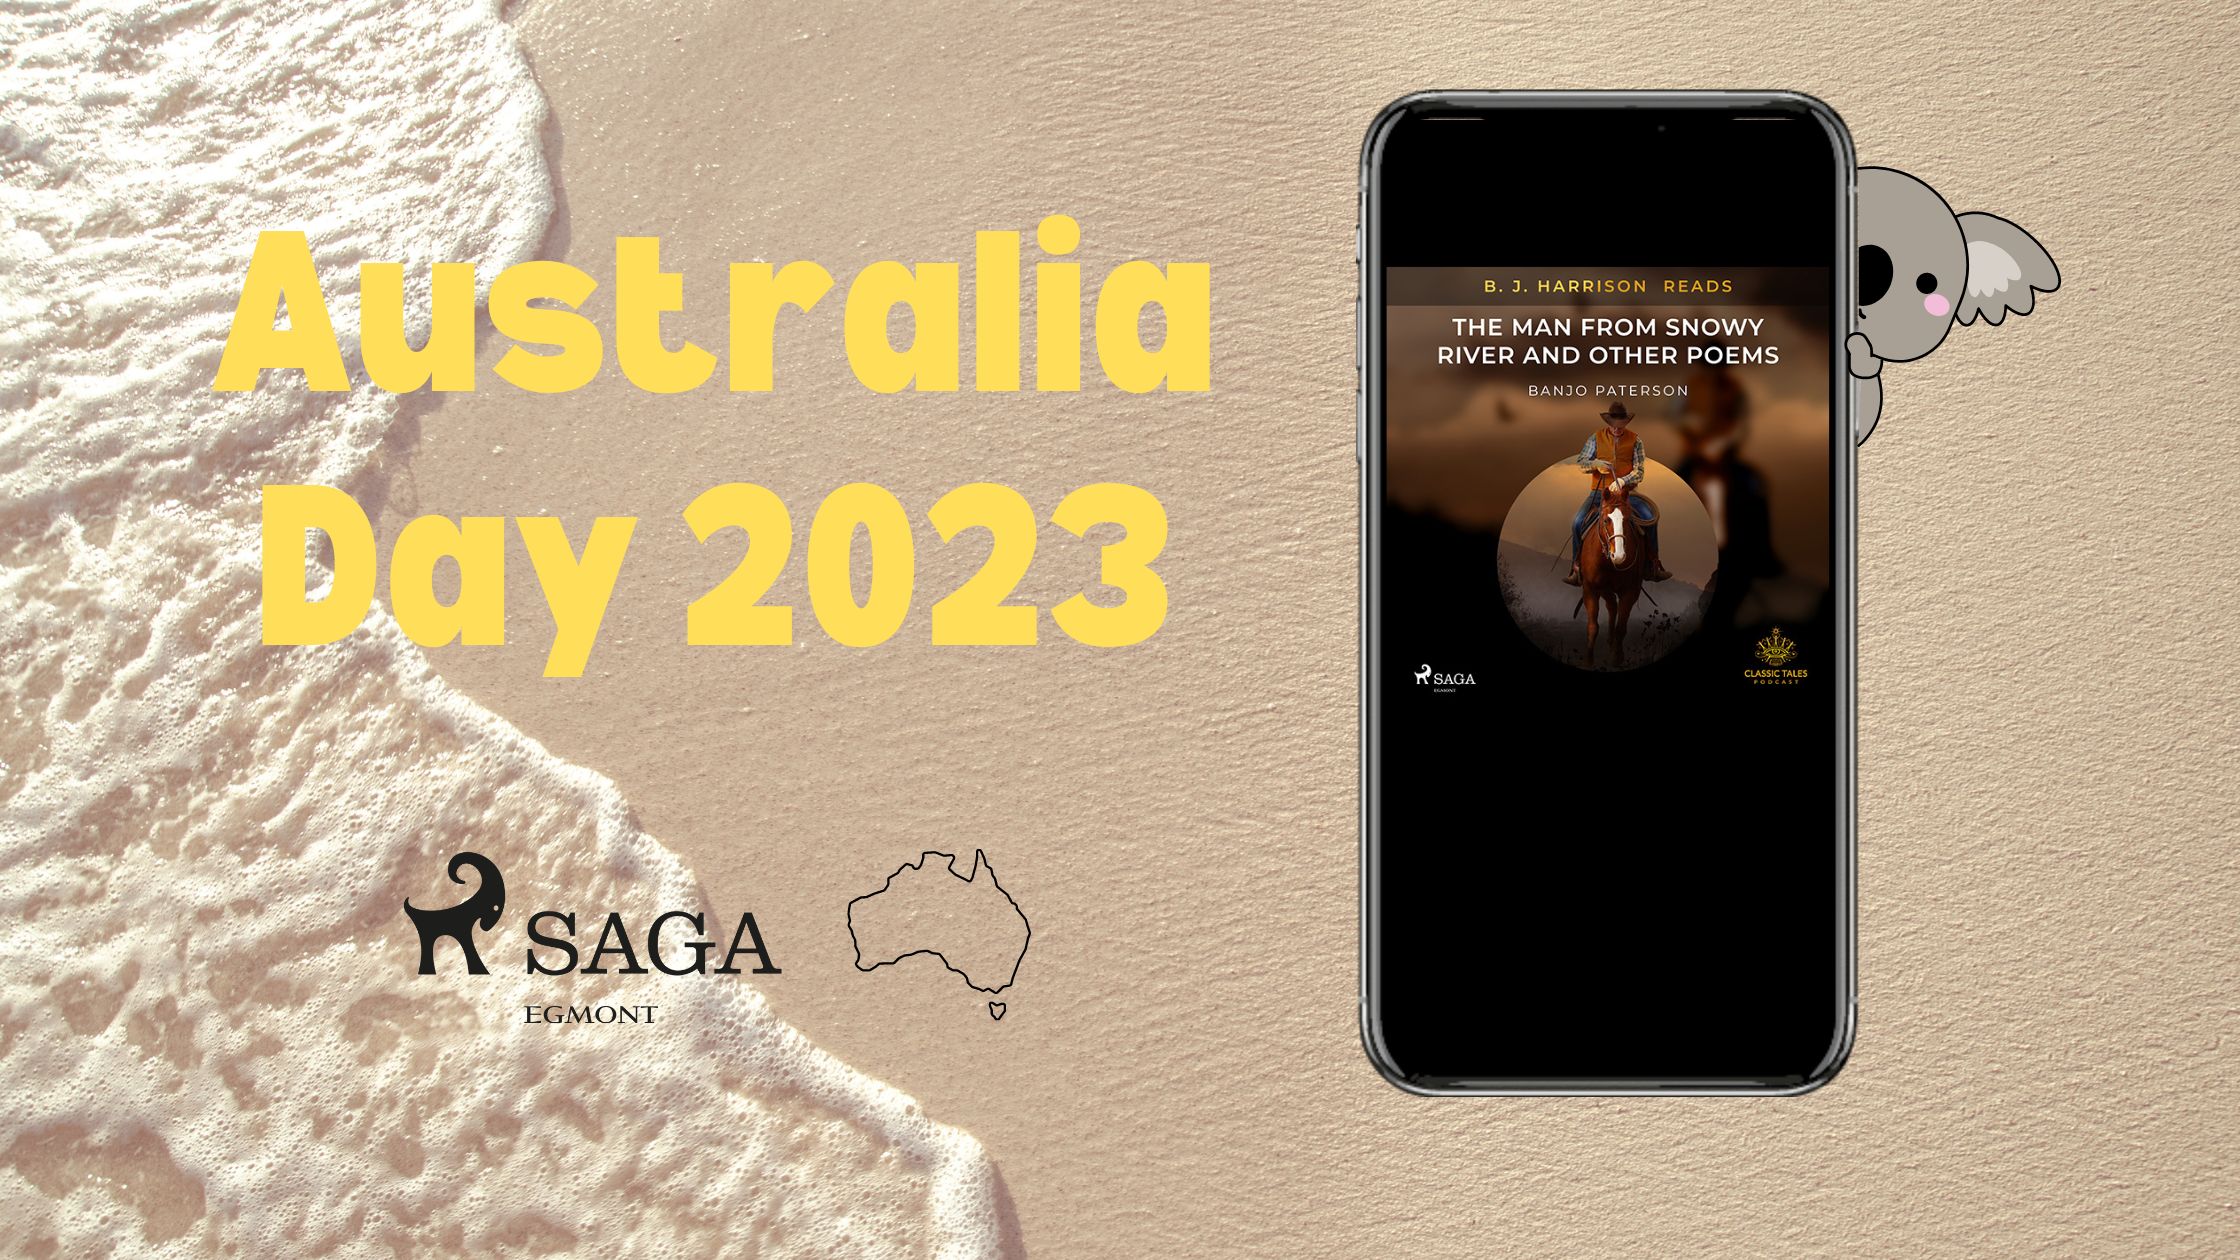 Australia Day 2023